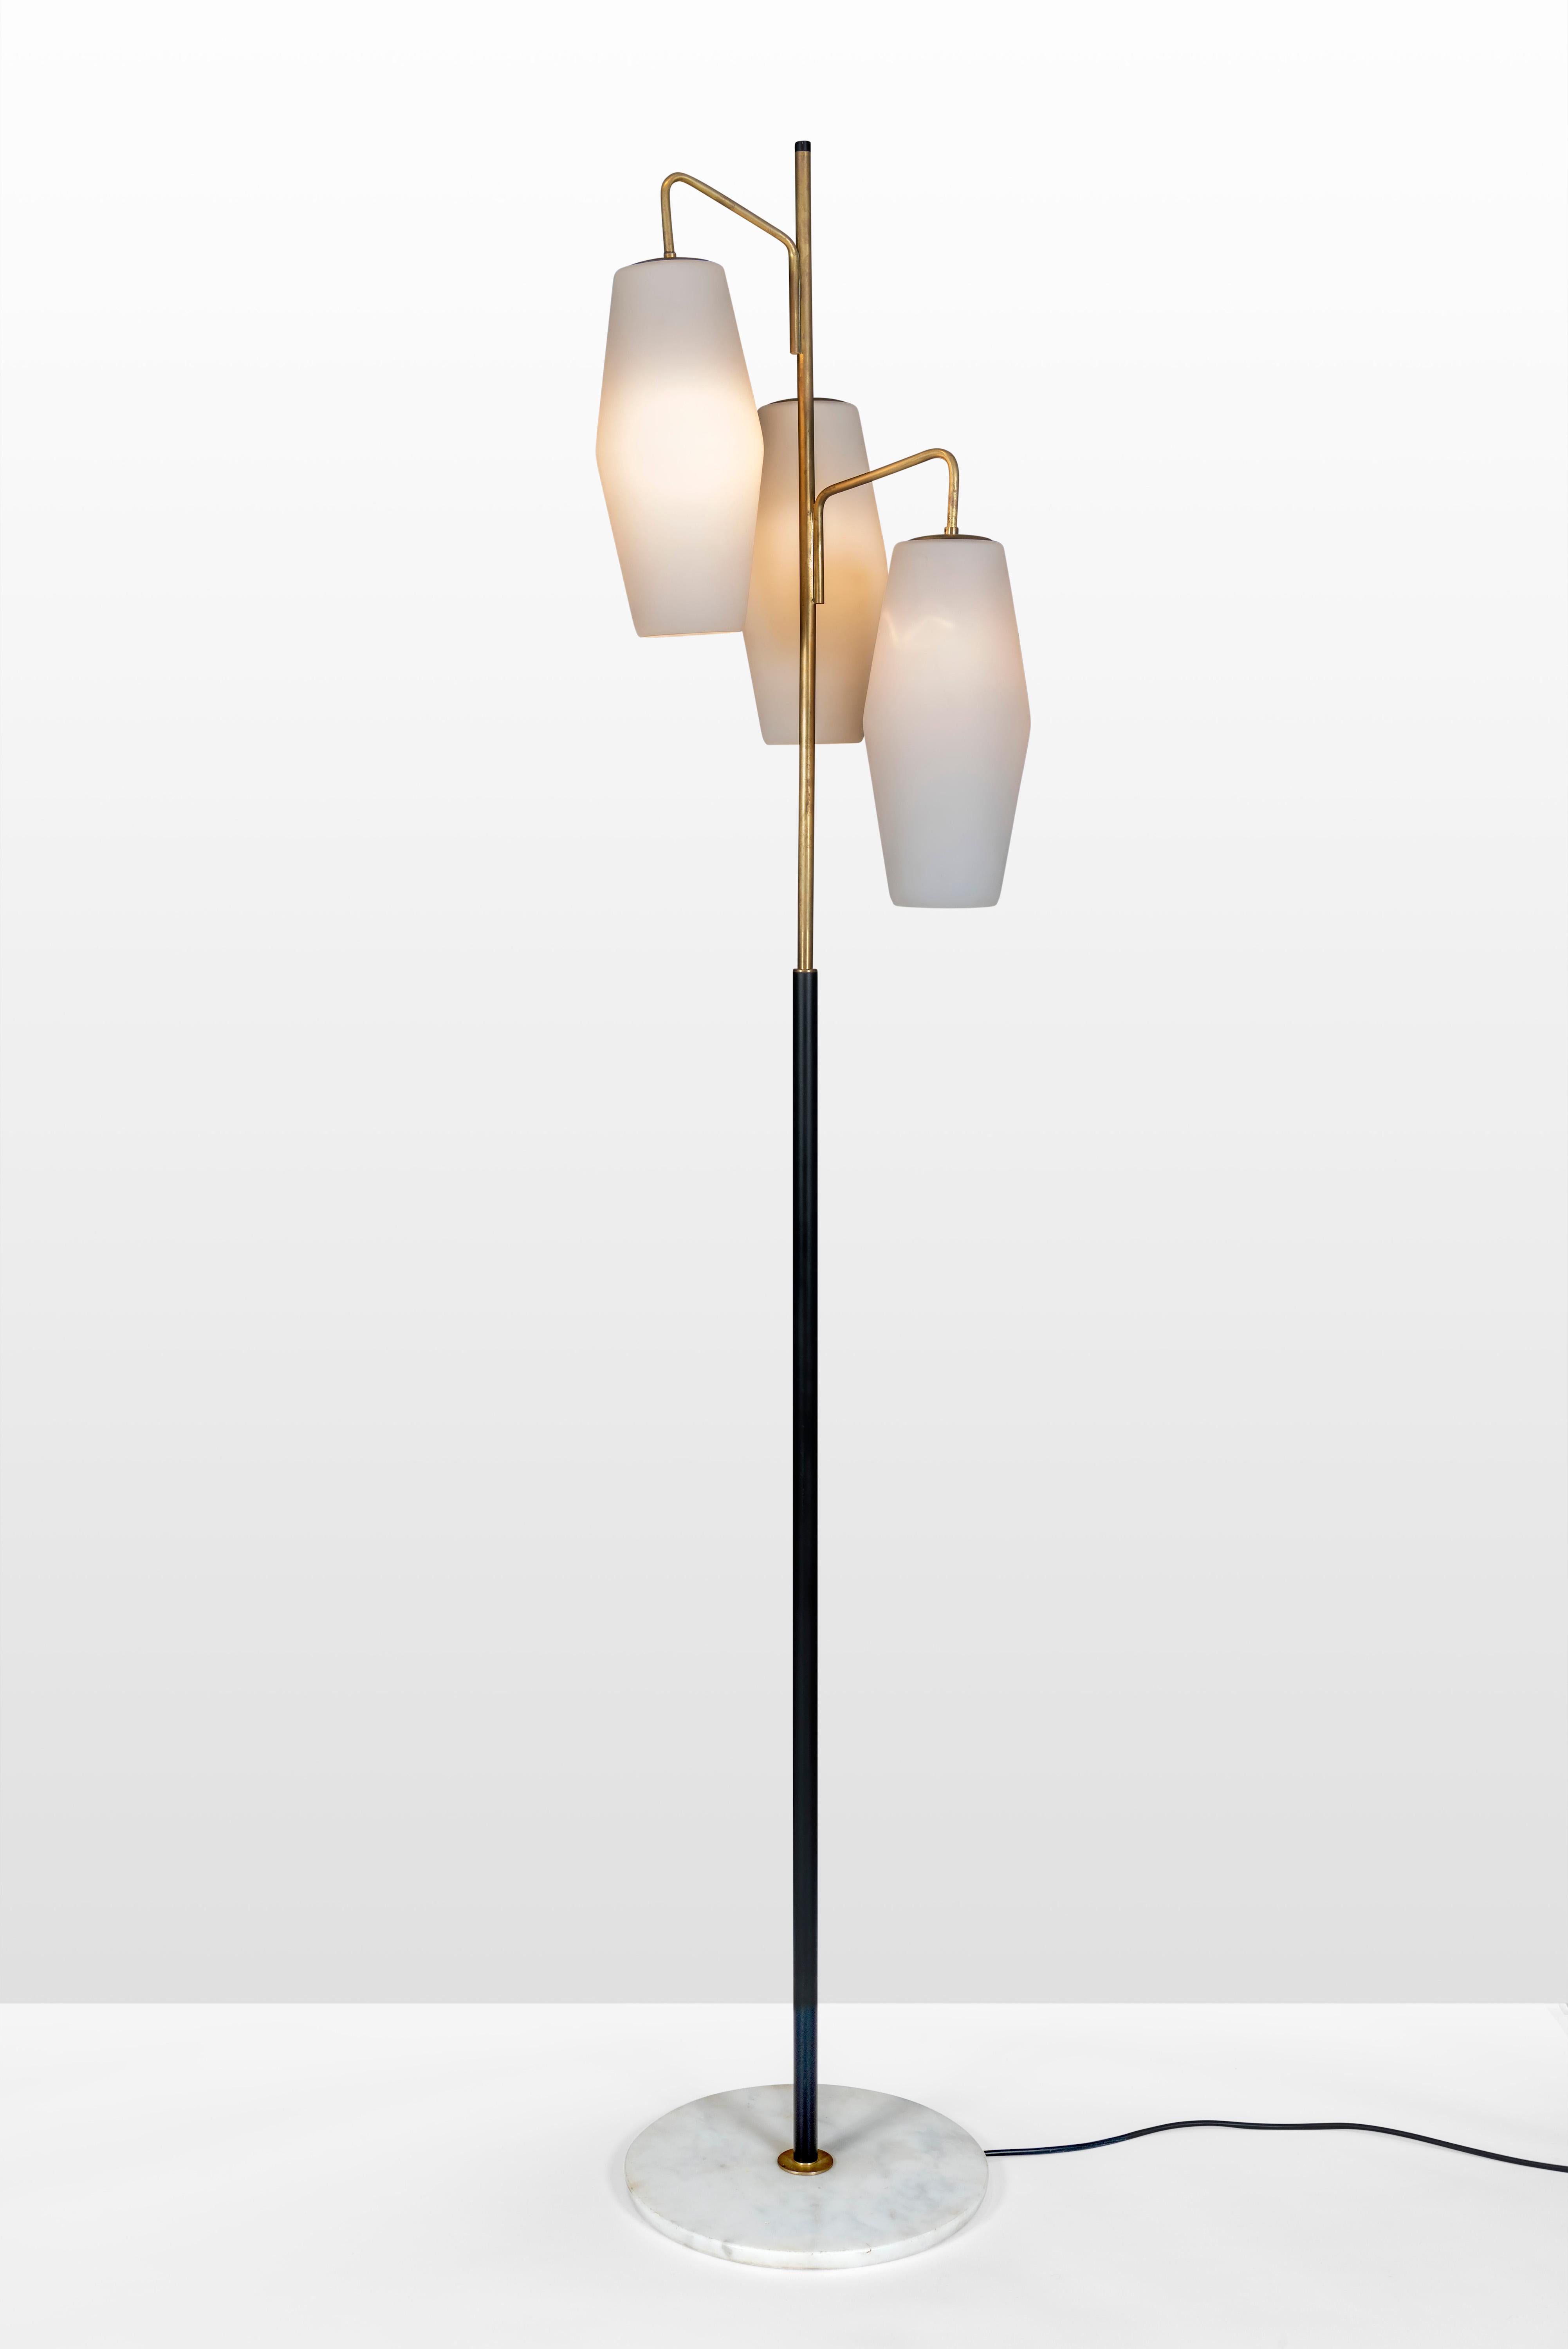 Italian Model 4052 Floor Lamp by Stilnovo For Sale